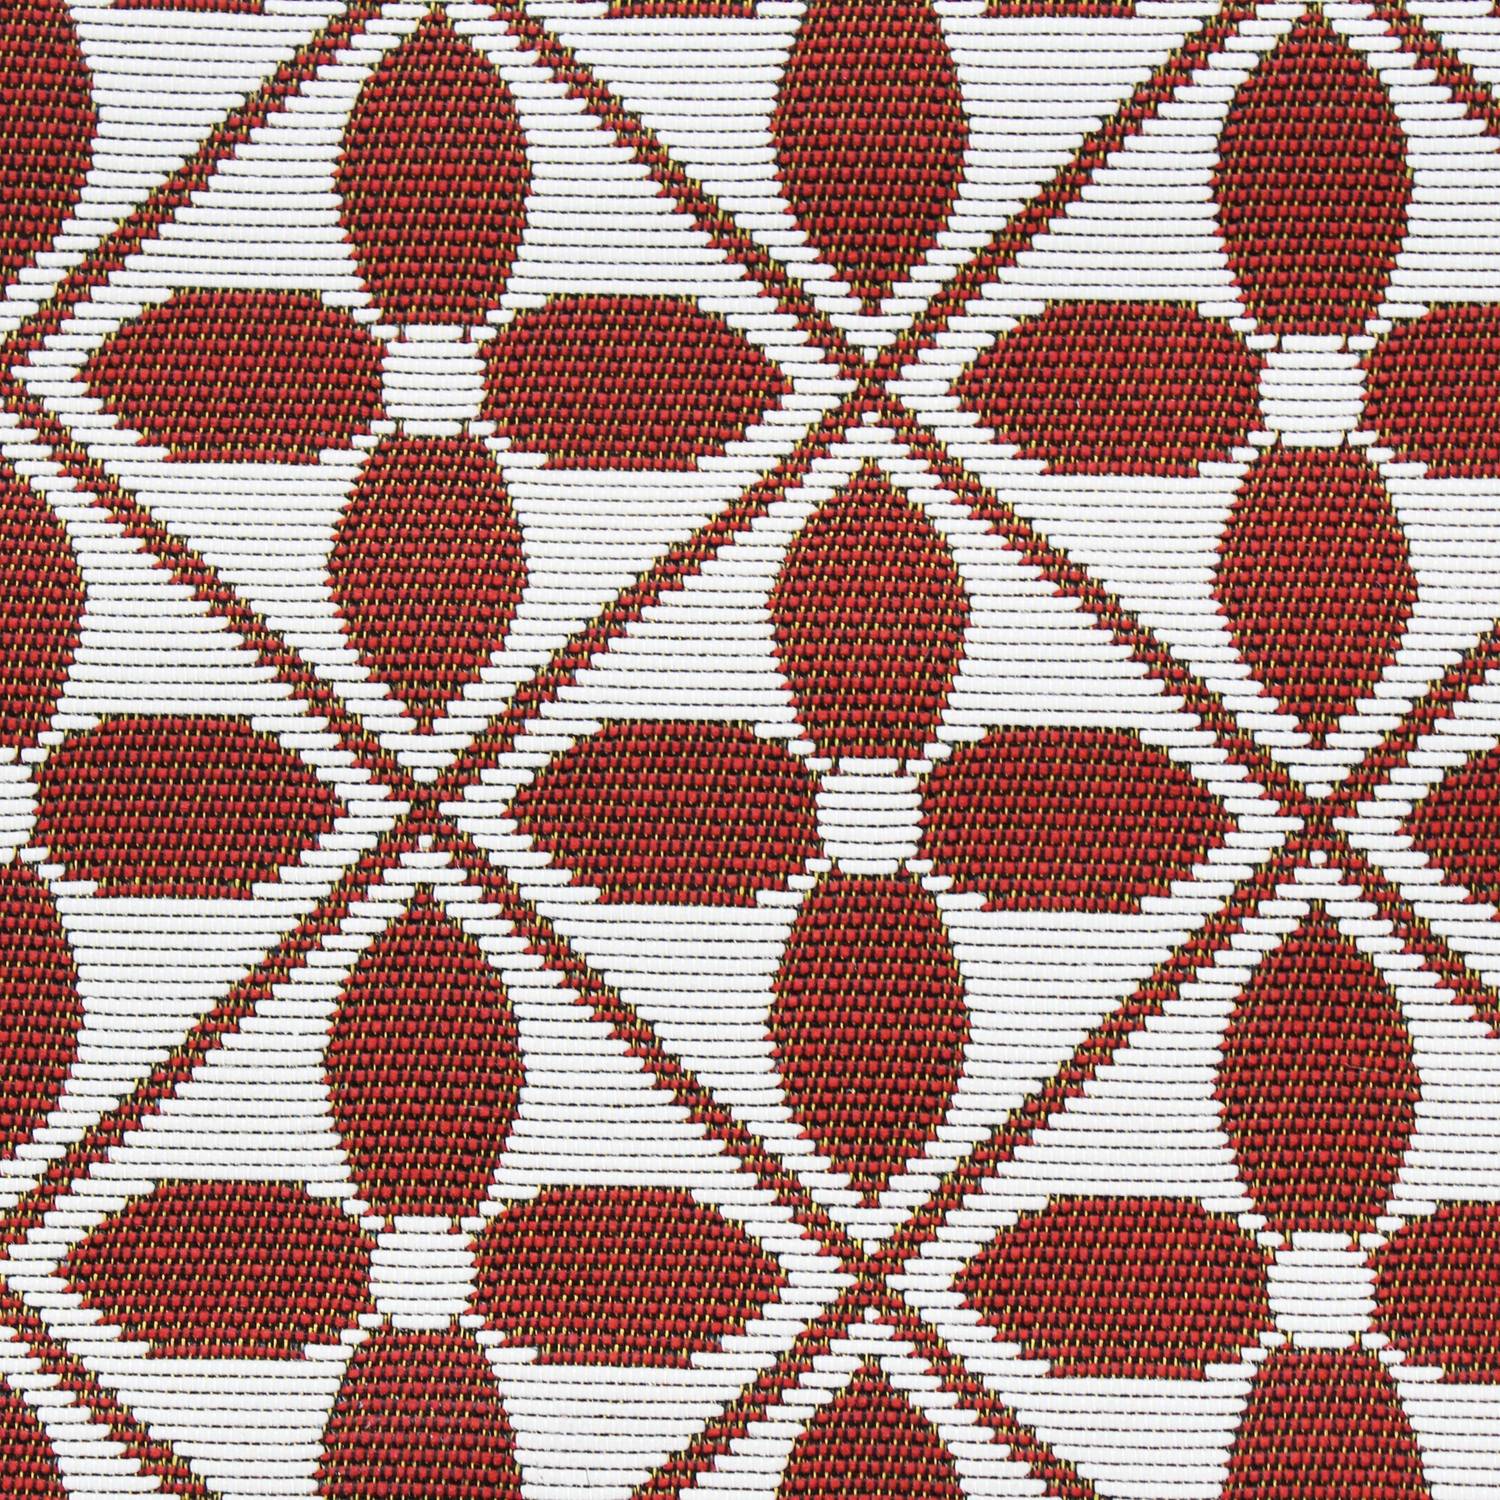 Outdoor rug - 200x290cm - tile print, rectangular, indoor/outdoor use - Terracotta Photo3